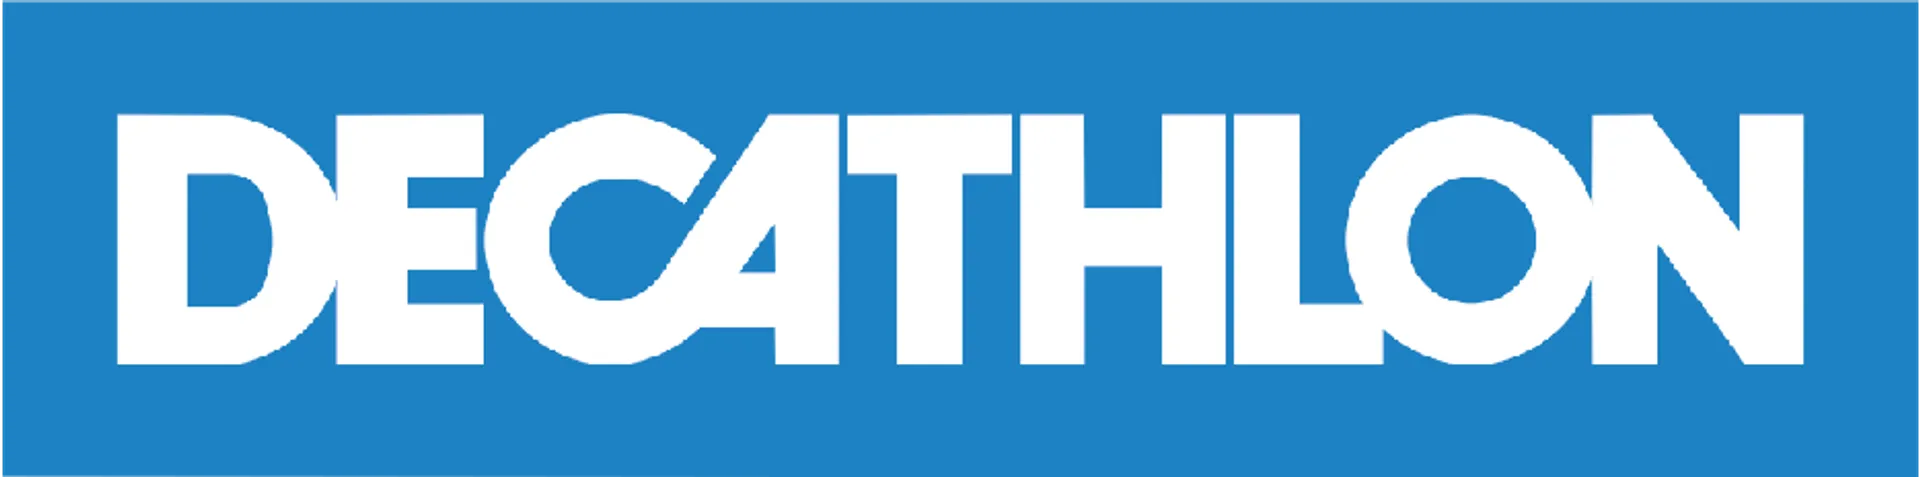 DECATHLON logo. Current weekly ad